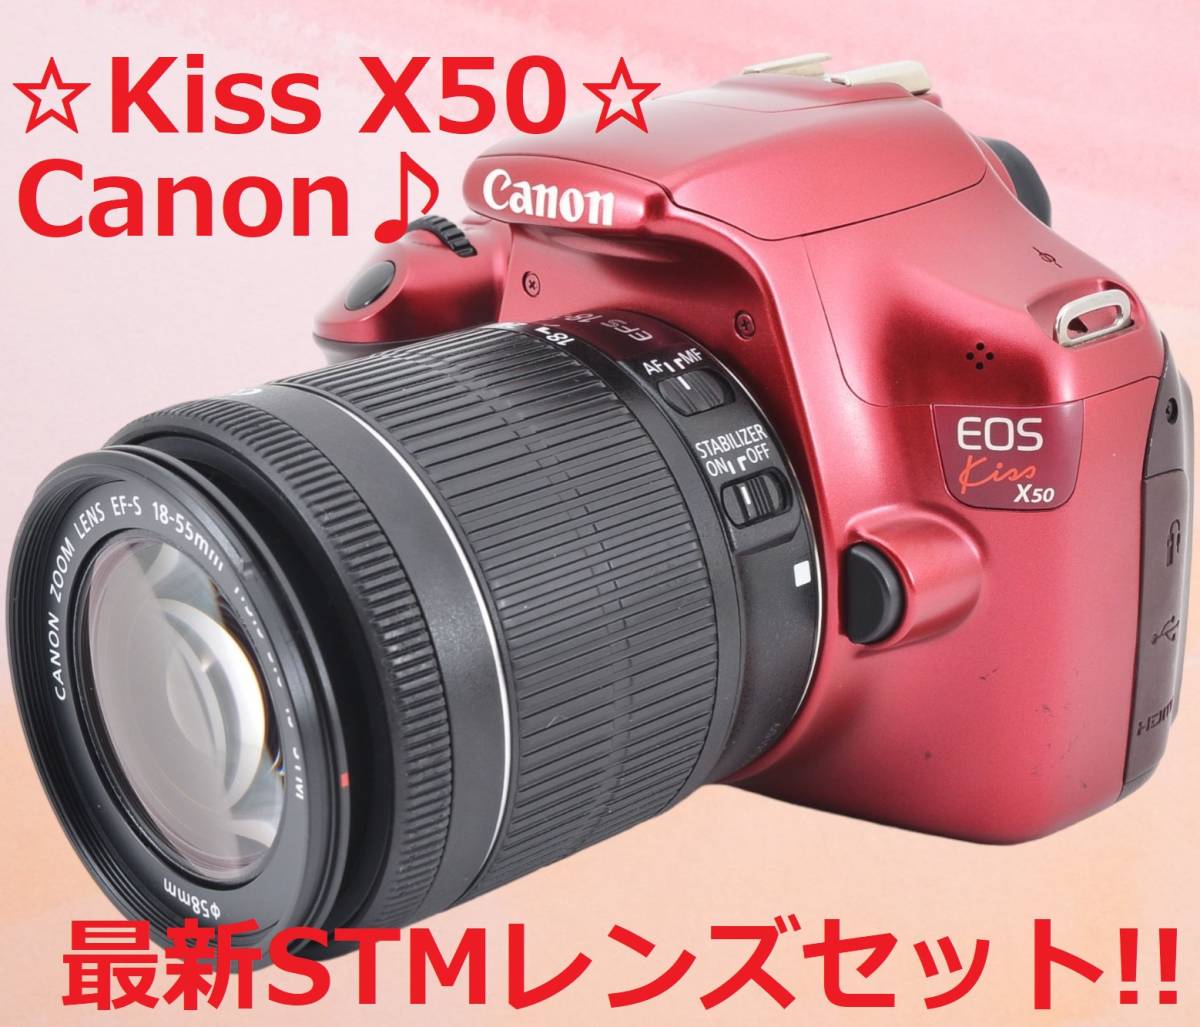 期間限定特別価格 ショット数たったの292回♪ Canon キャノン kiss X50